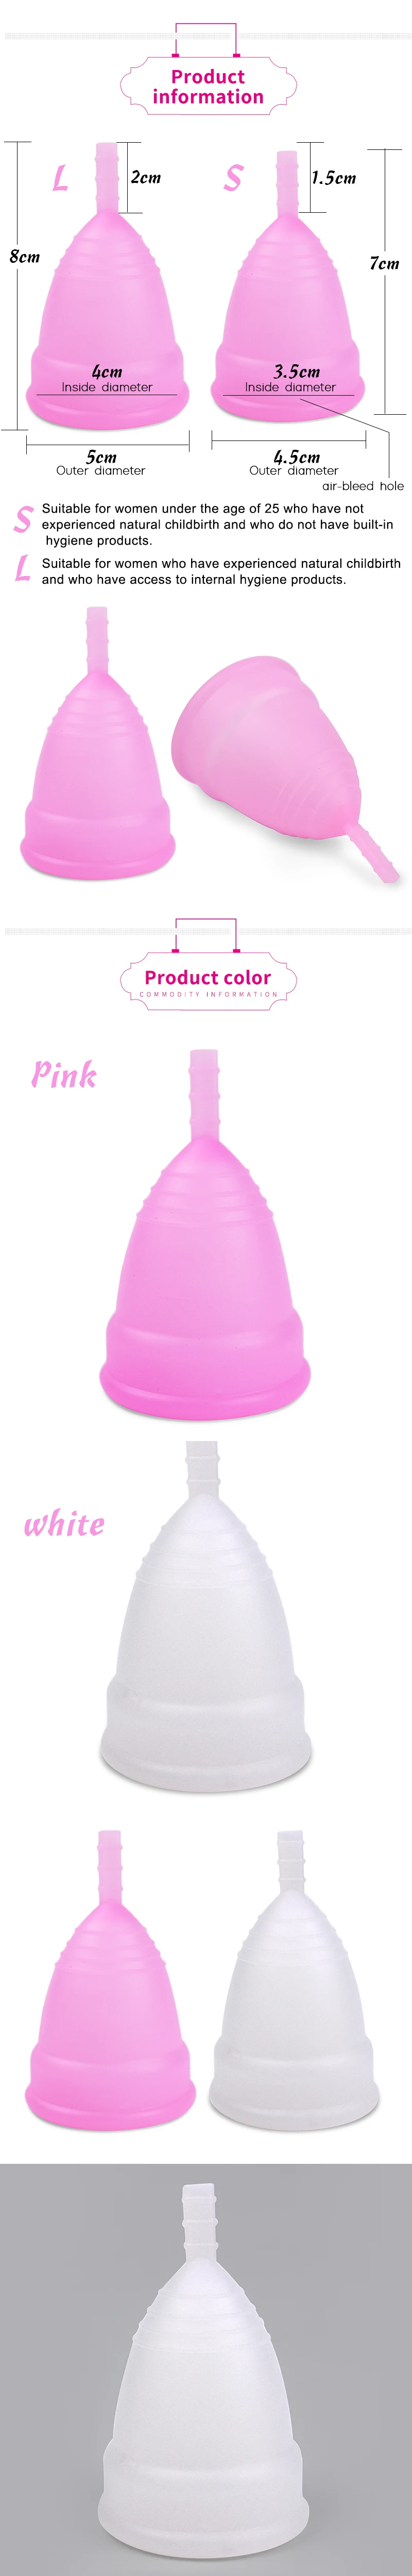 Многоразовые Мягкие силиконовые чашки для женской гигиены менструальные чашки для вагины менструации уход за здоровьем Альтернативная гигиеническая салфетка тампоны